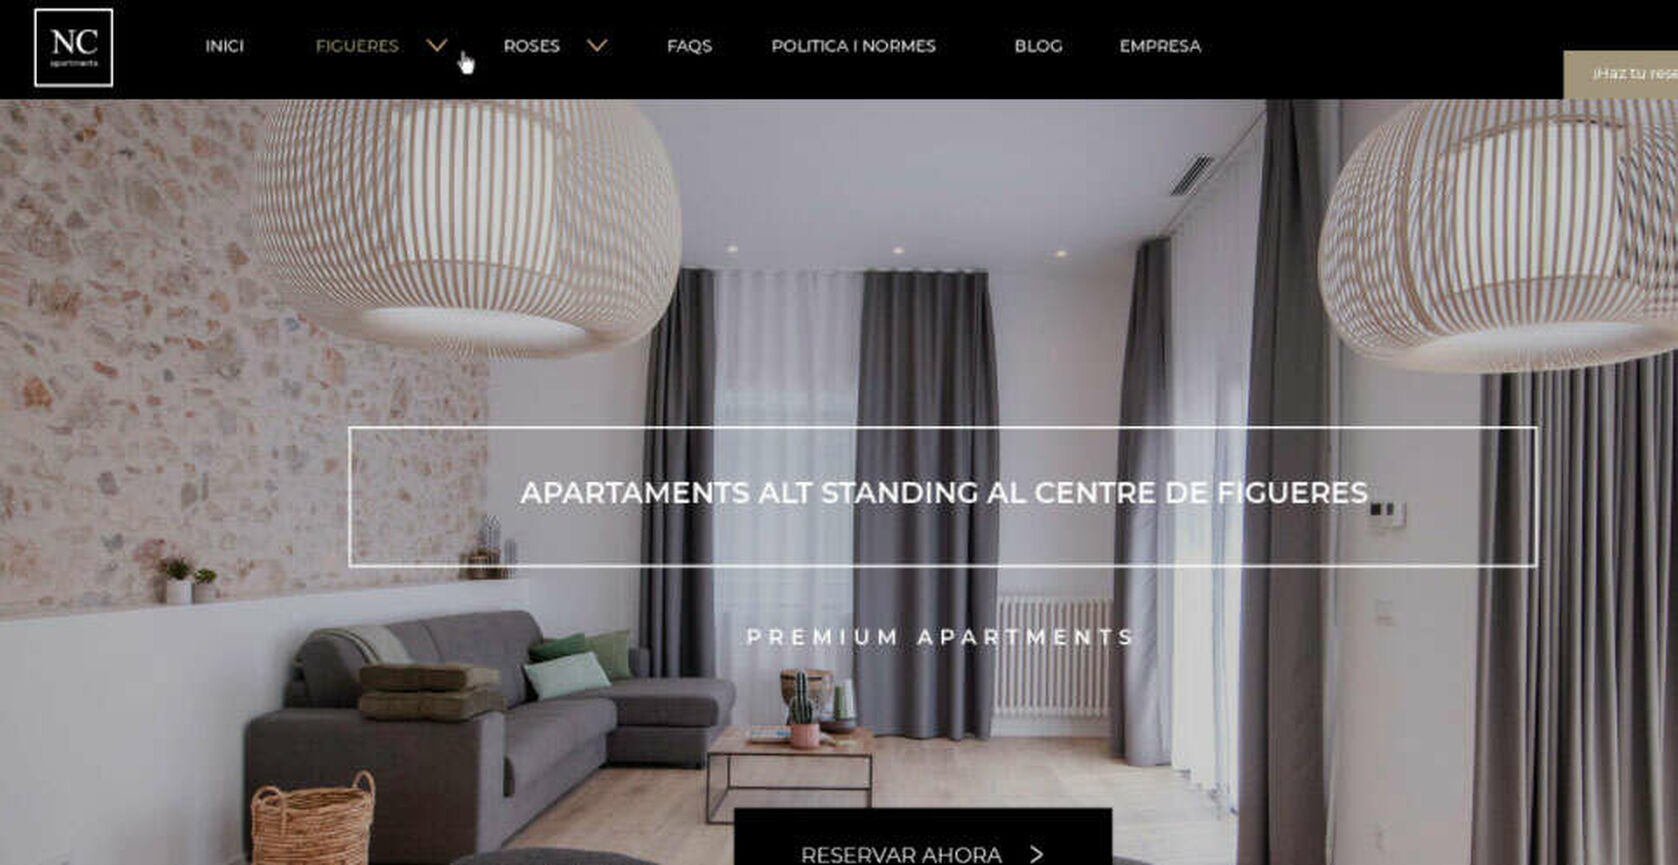 Proyecto de diseño de la página web de NC Apartaments en Figueres